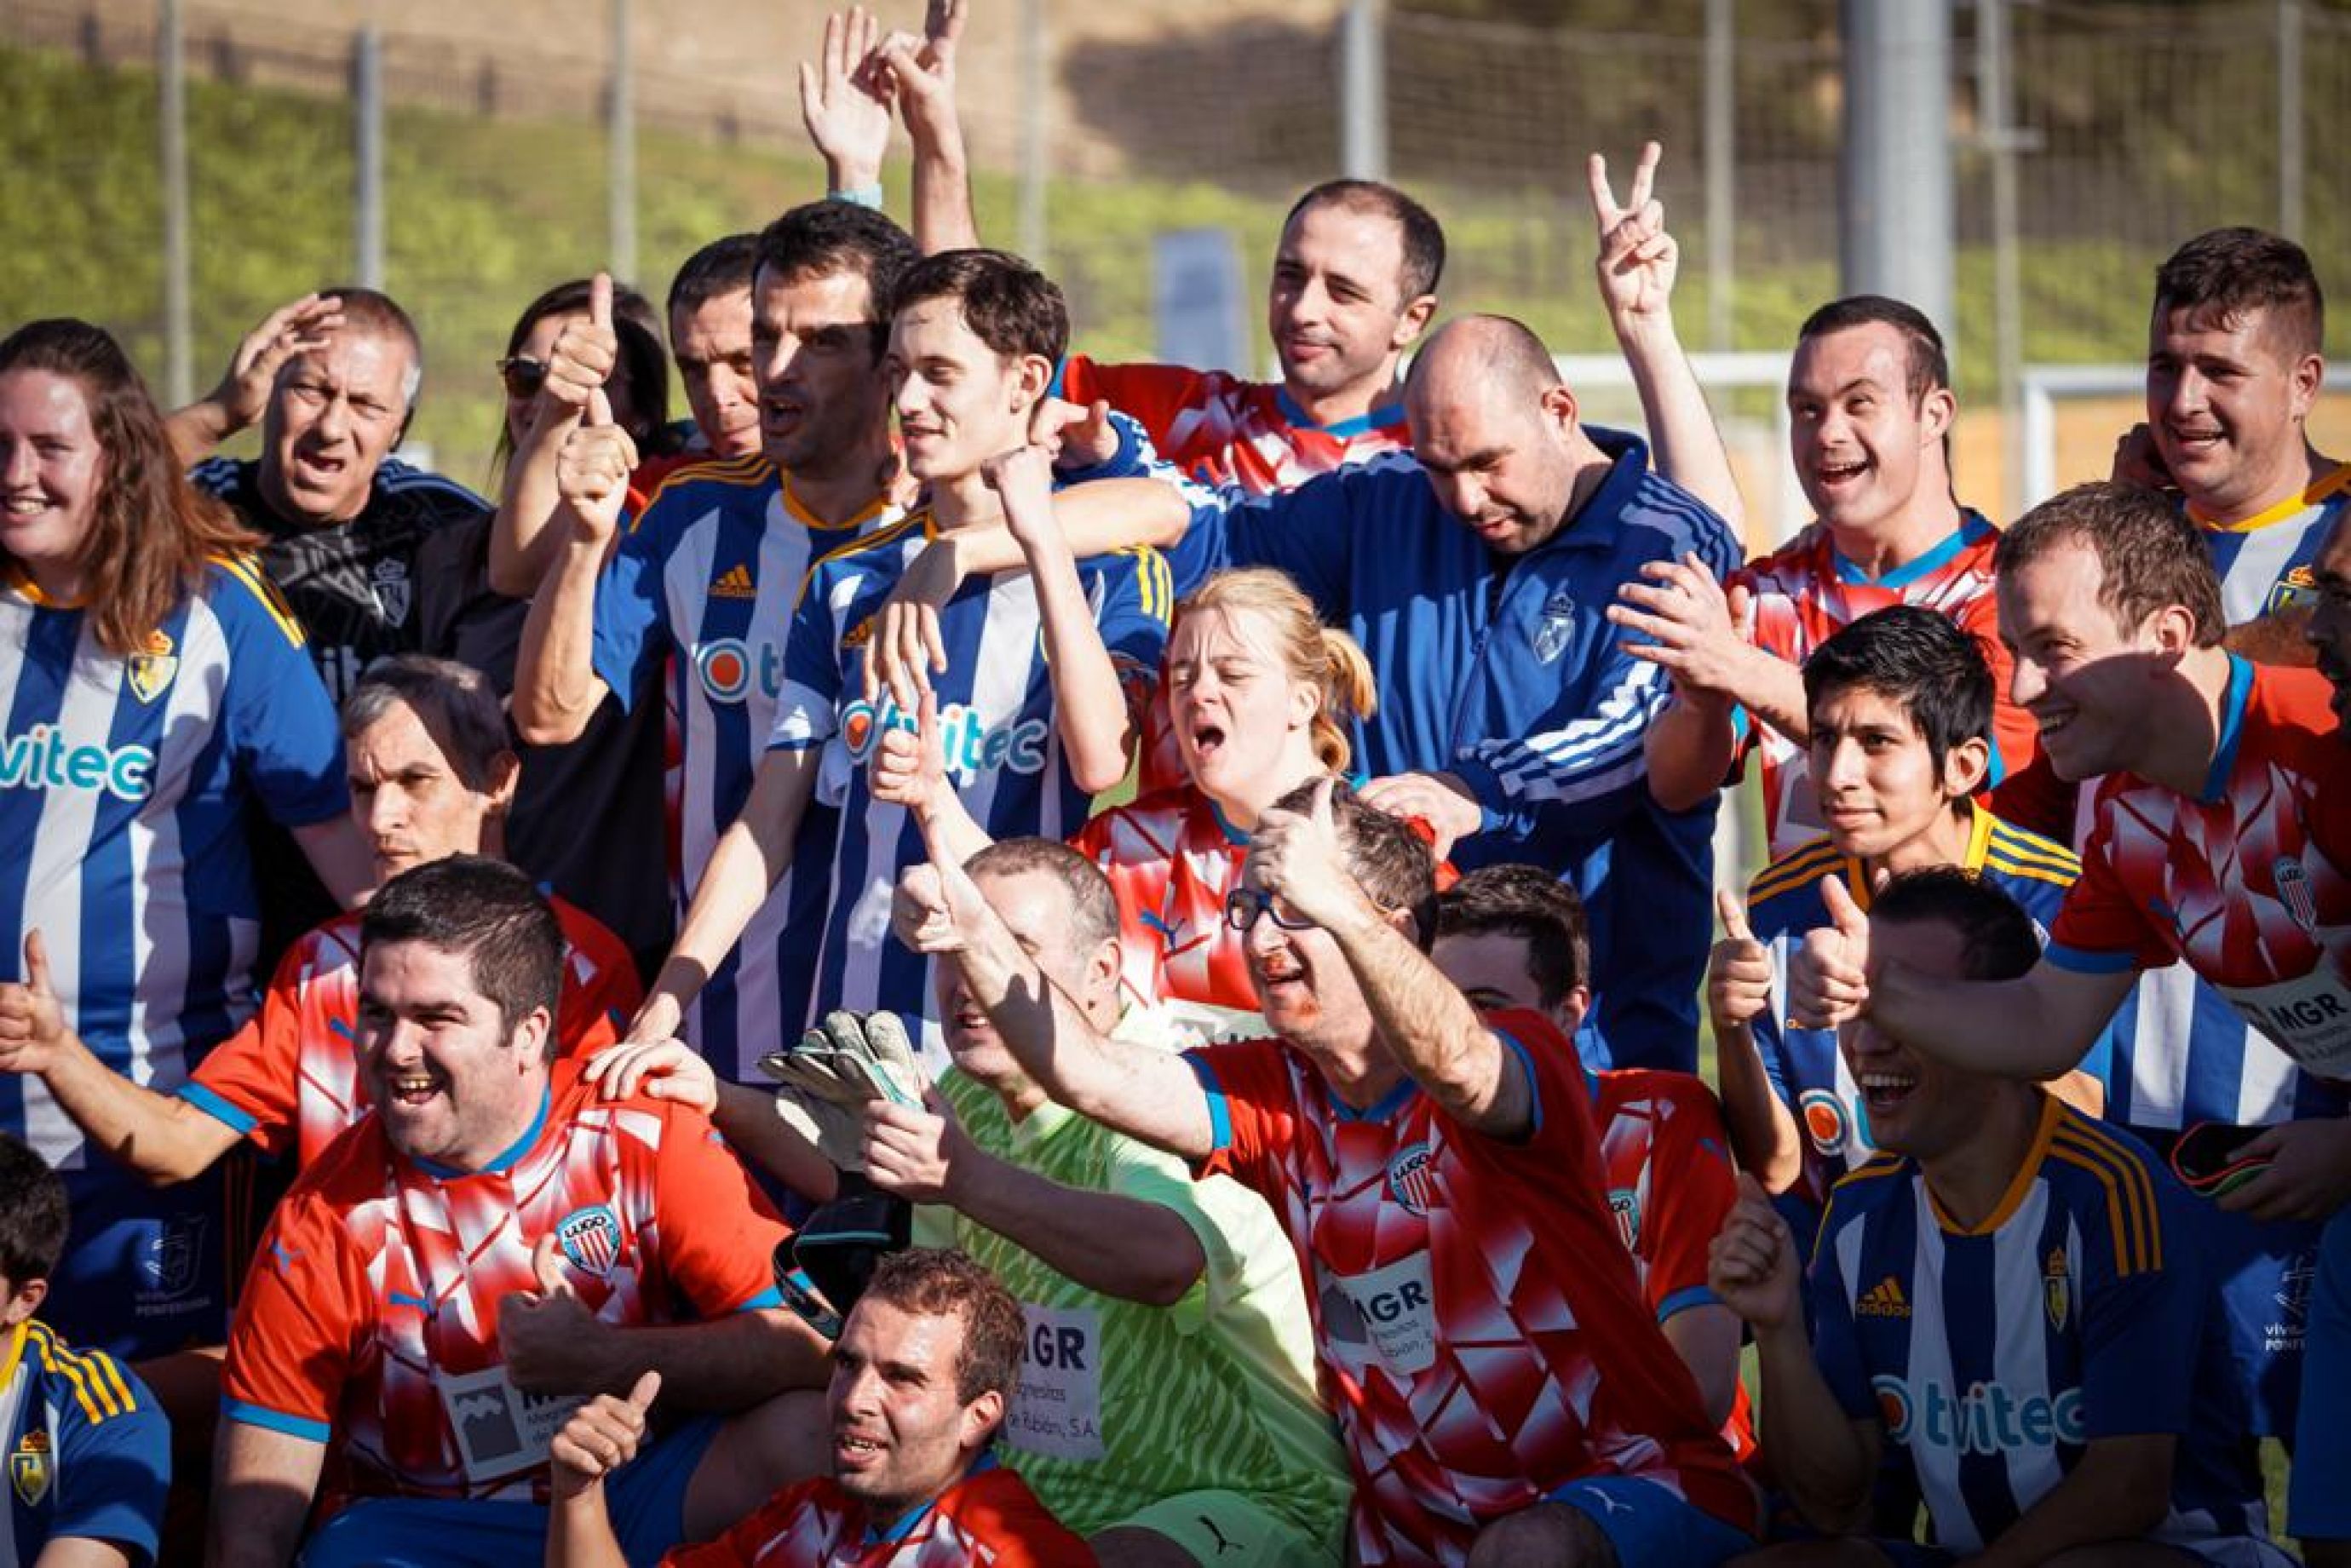 Capítulo 11: El equipo de fútbol masculino uruguayo a través de